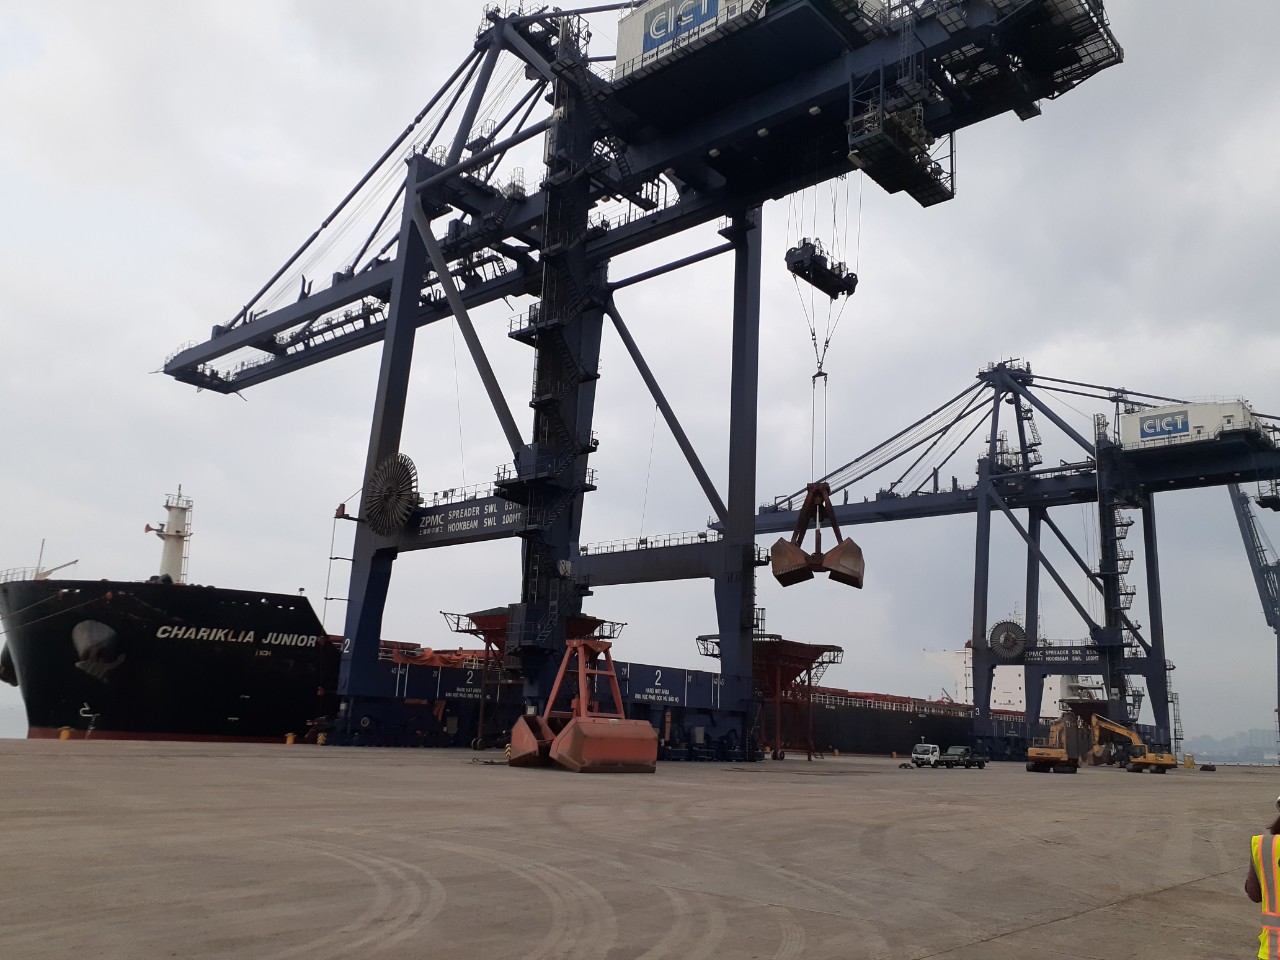 Tổng Hợp Tầu Nông Sản cảng Cái Lân Tháng 04.2020